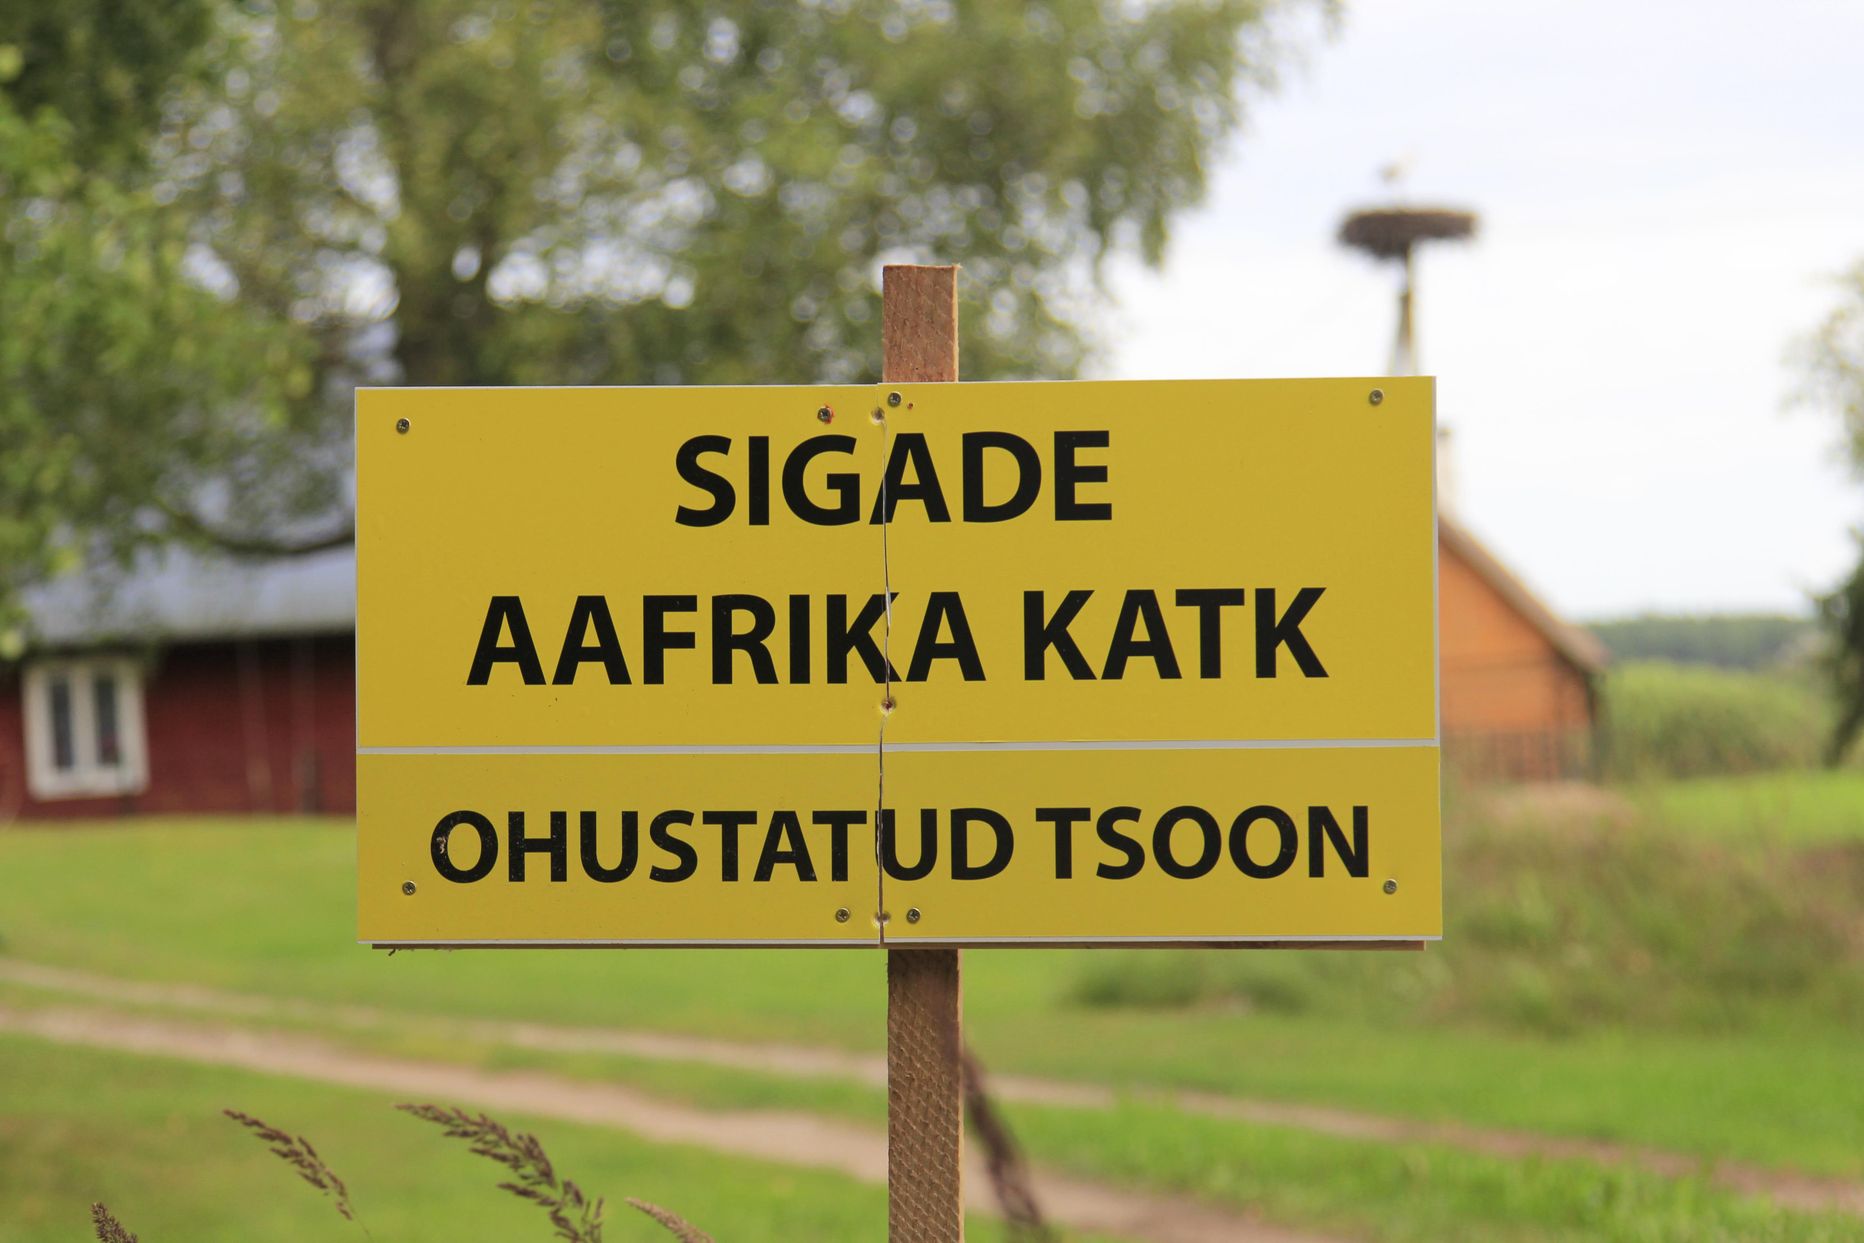 Sigade katk jõudis Eesti seakasvatajateni 2015. aasta suvel.